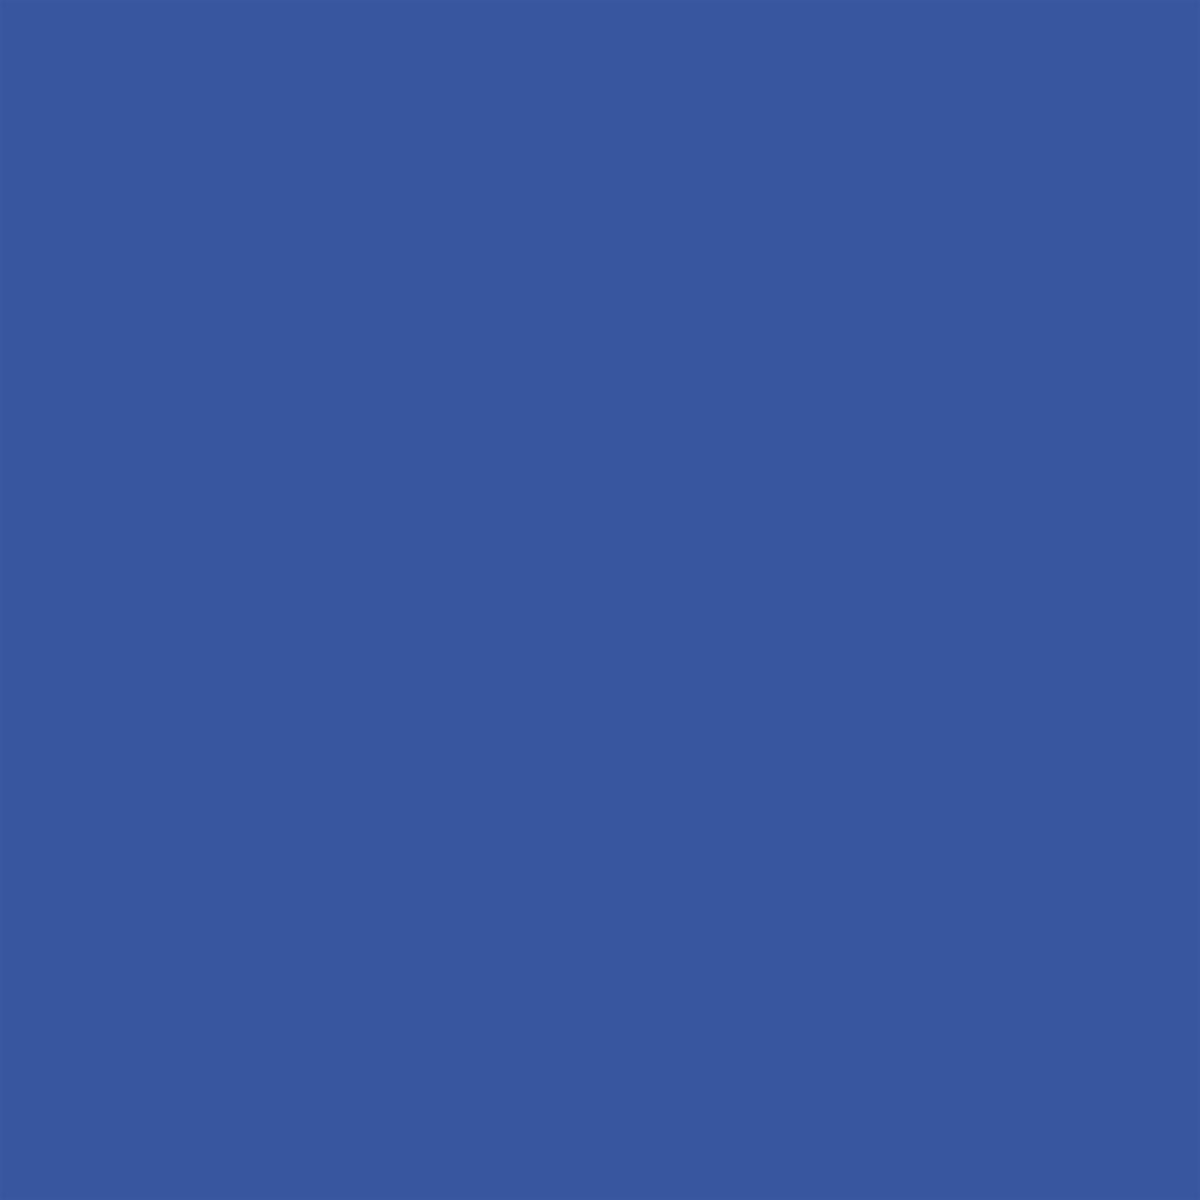 Winsor & Newton - Promarker Brush - Egyptian Blue - BrushMarker